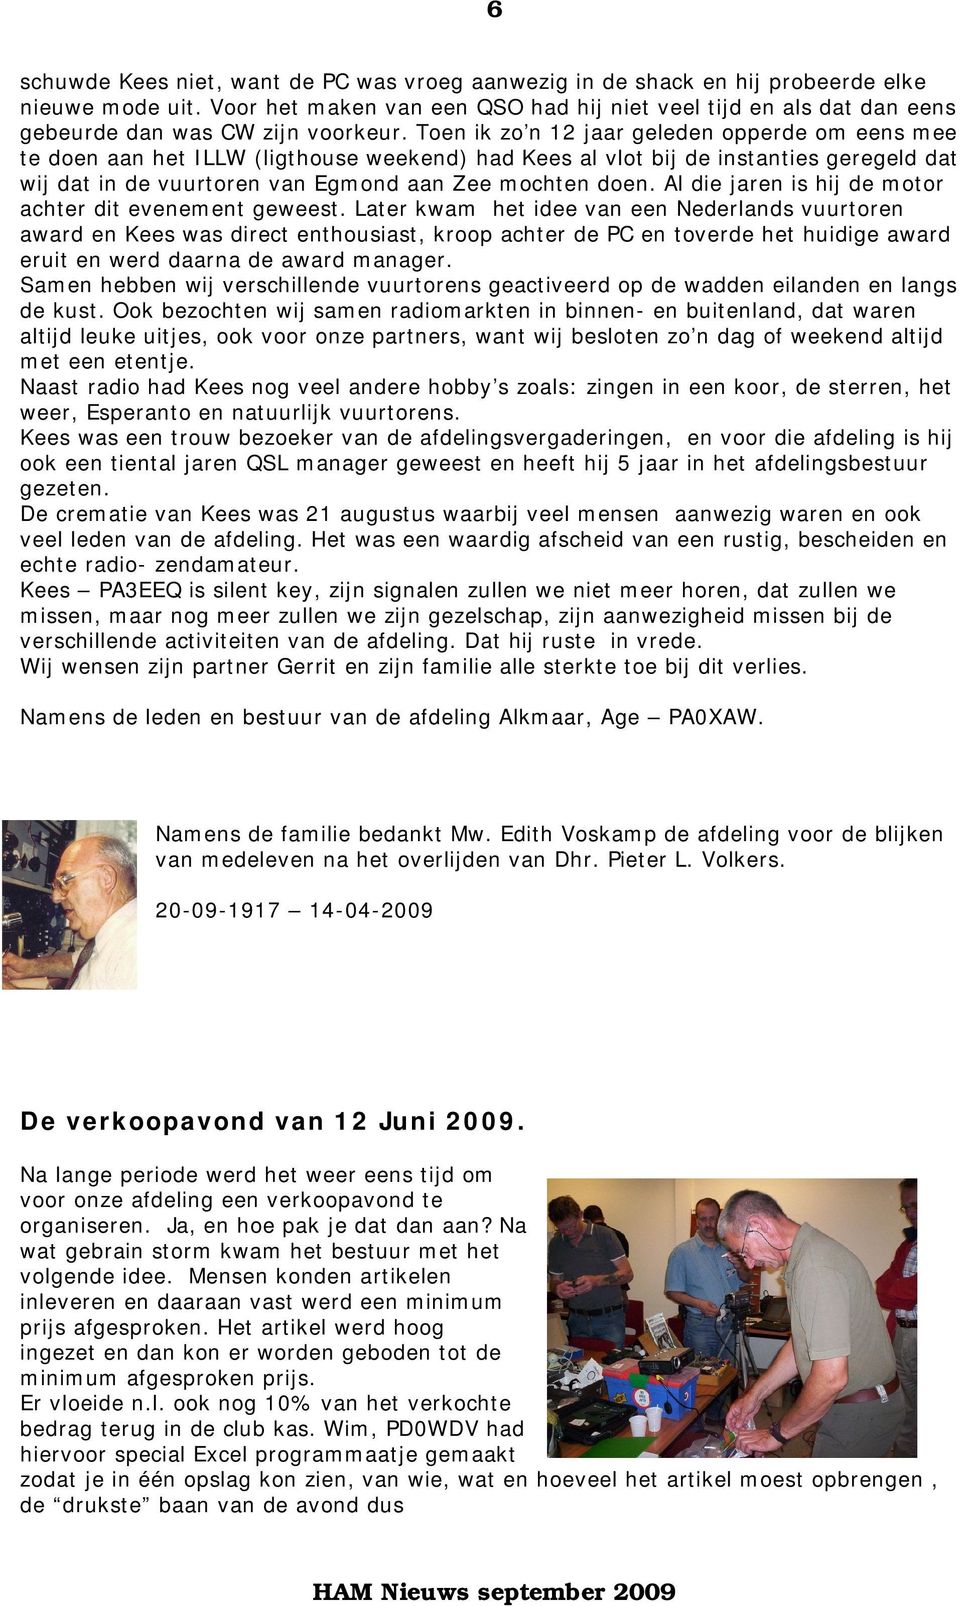 Toen ik zo n 12 jaar geleden opperde om eens mee te doen aan het ILLW (ligthouse weekend) had Kees al vlot bij de instanties geregeld dat wij dat in de vuurtoren van Egmond aan Zee mochten doen.